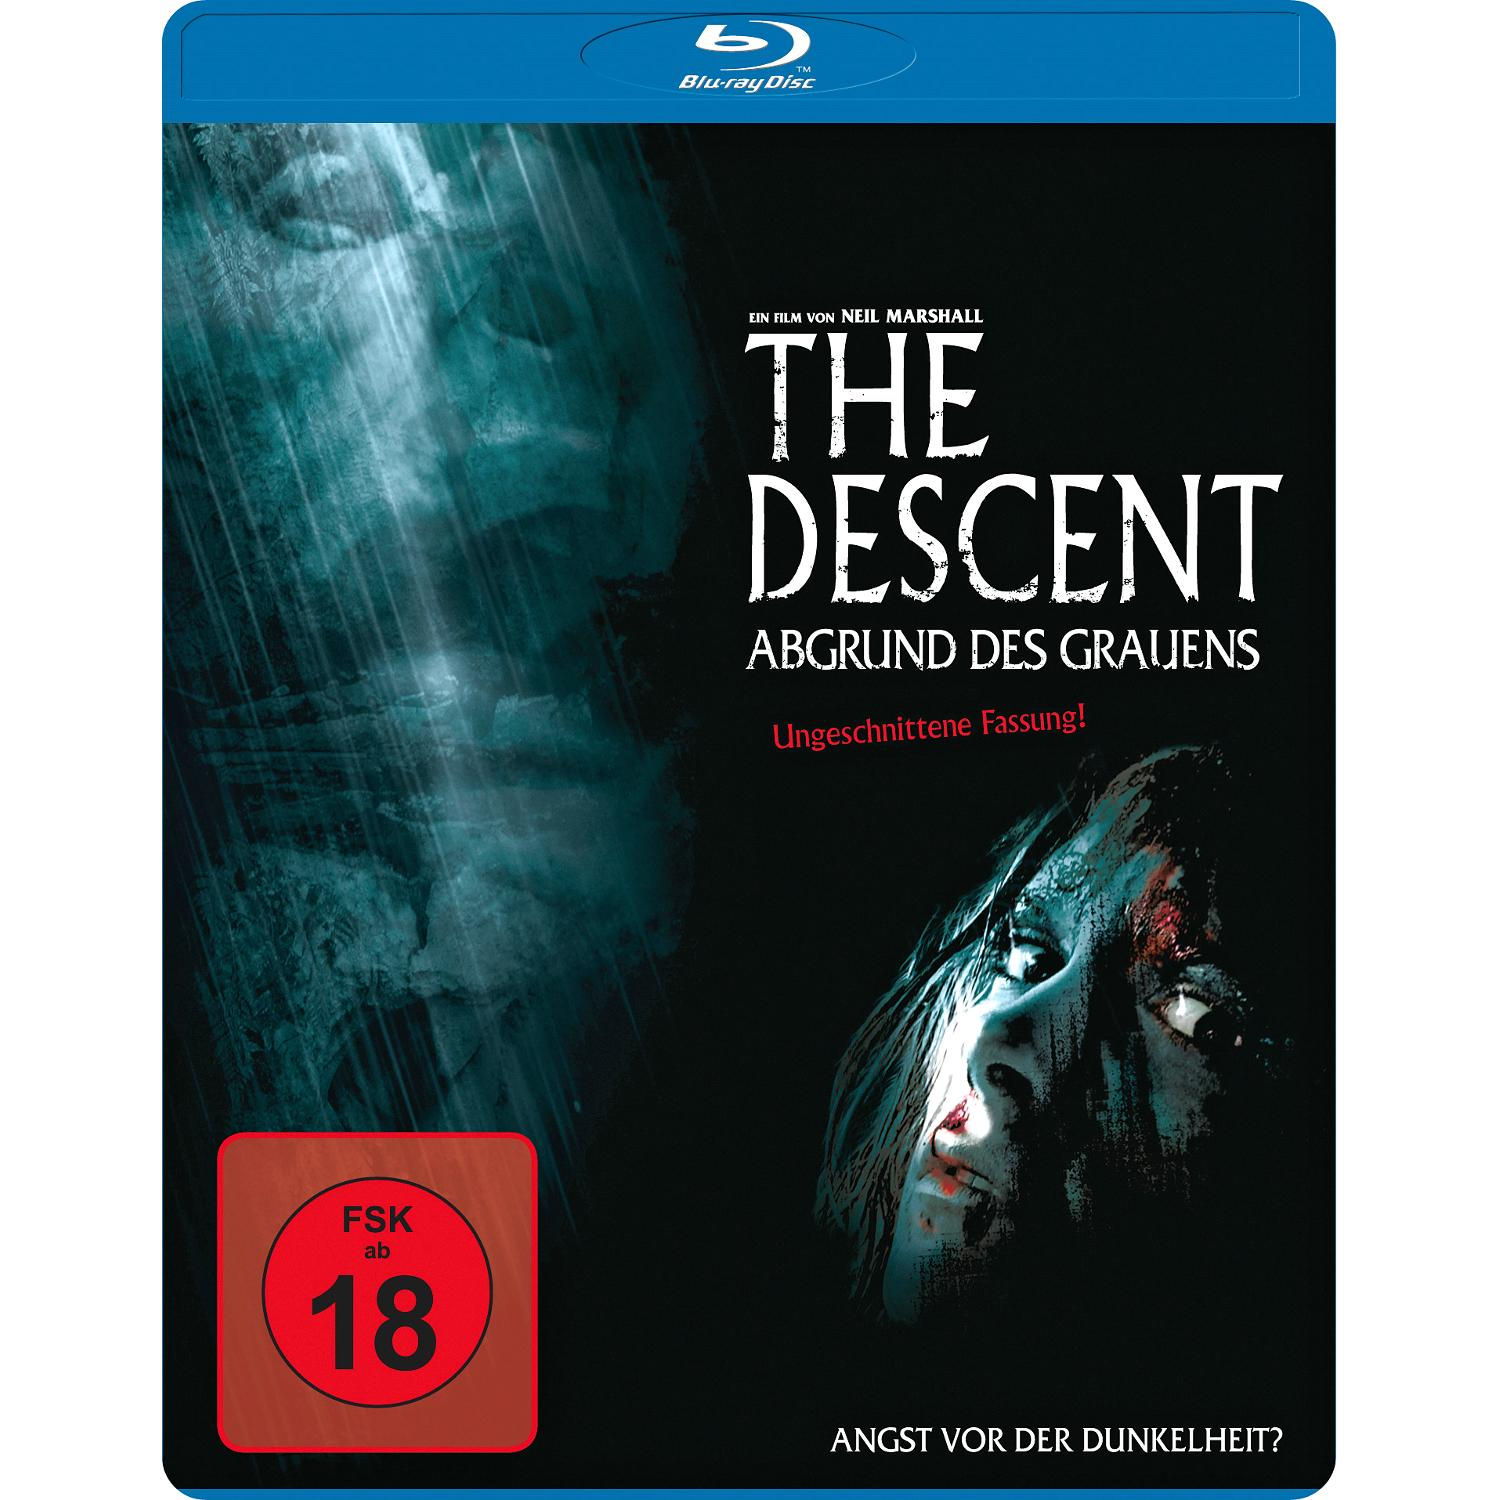 Grauens Abgrund Descent des The Blu-ray -